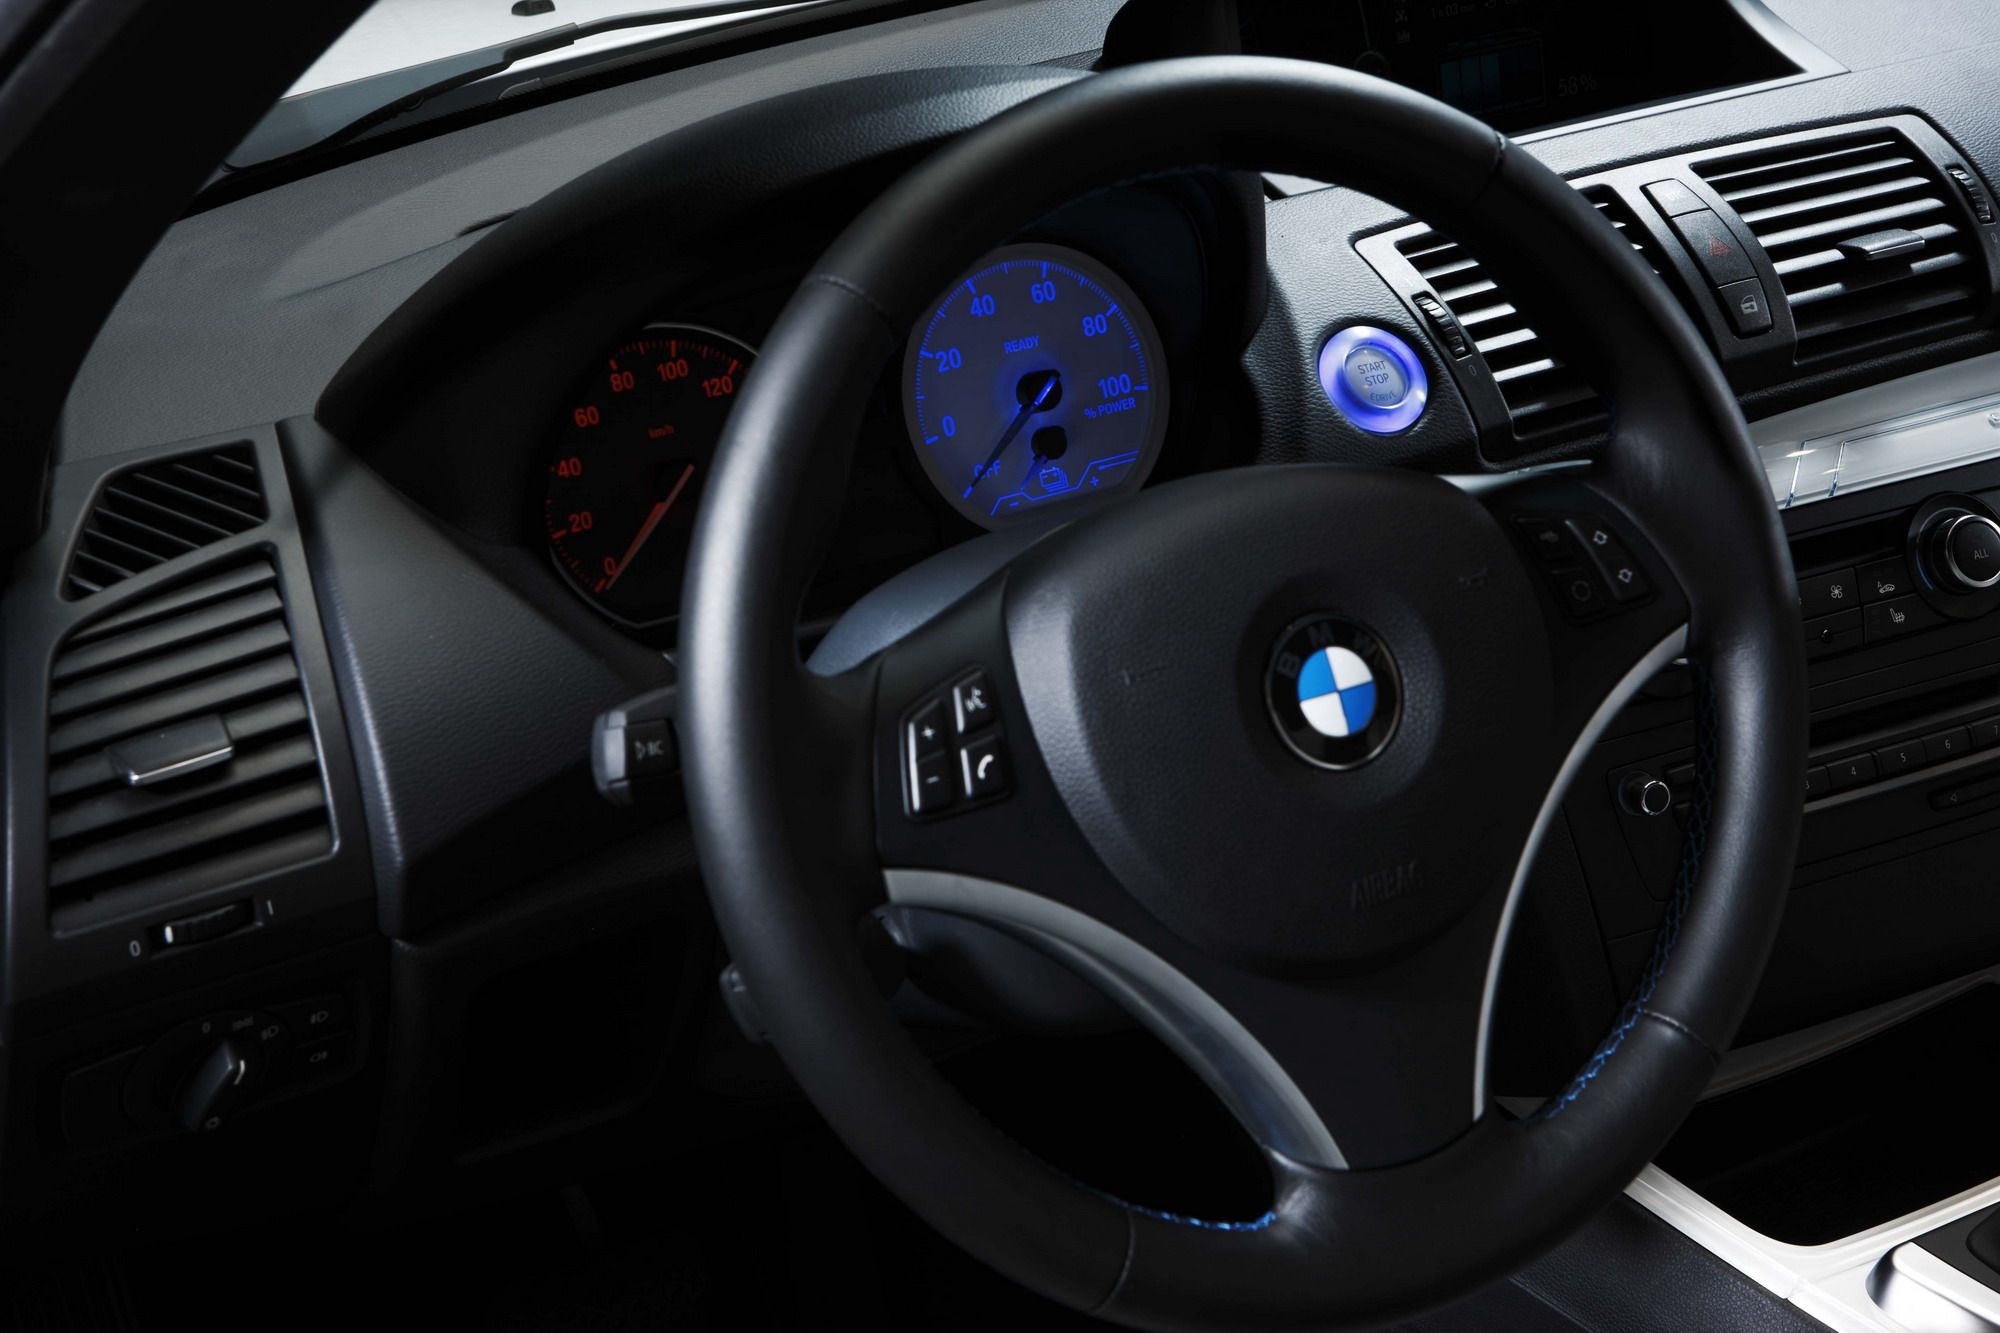 2010 BMW Concept ActiveE